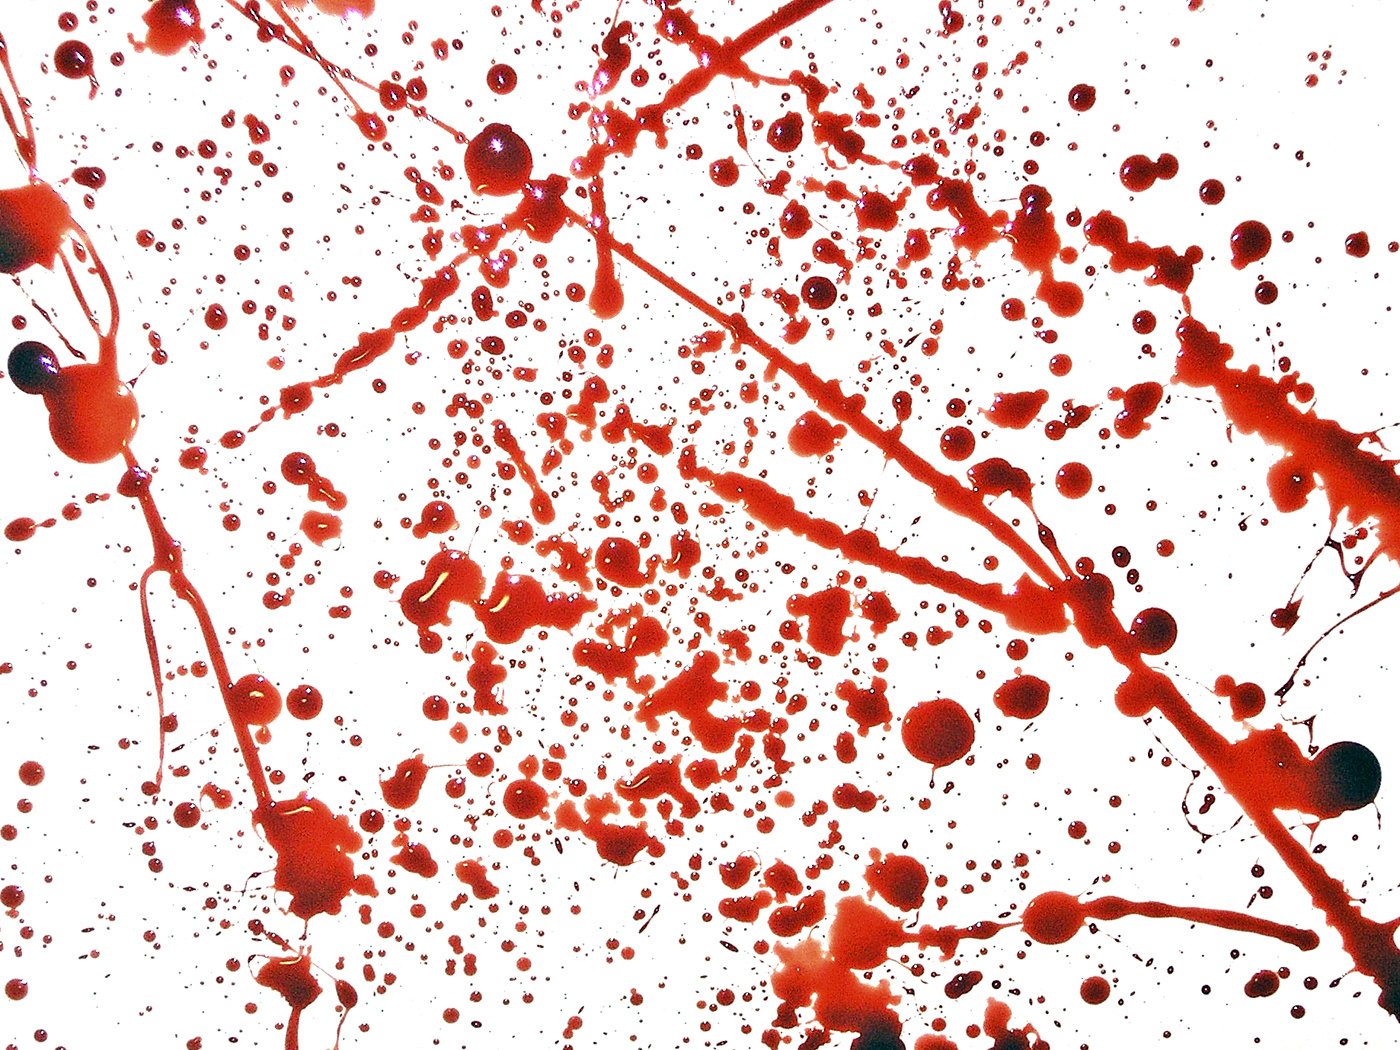 Blood Splatter Background Images  Free Download on Freepik